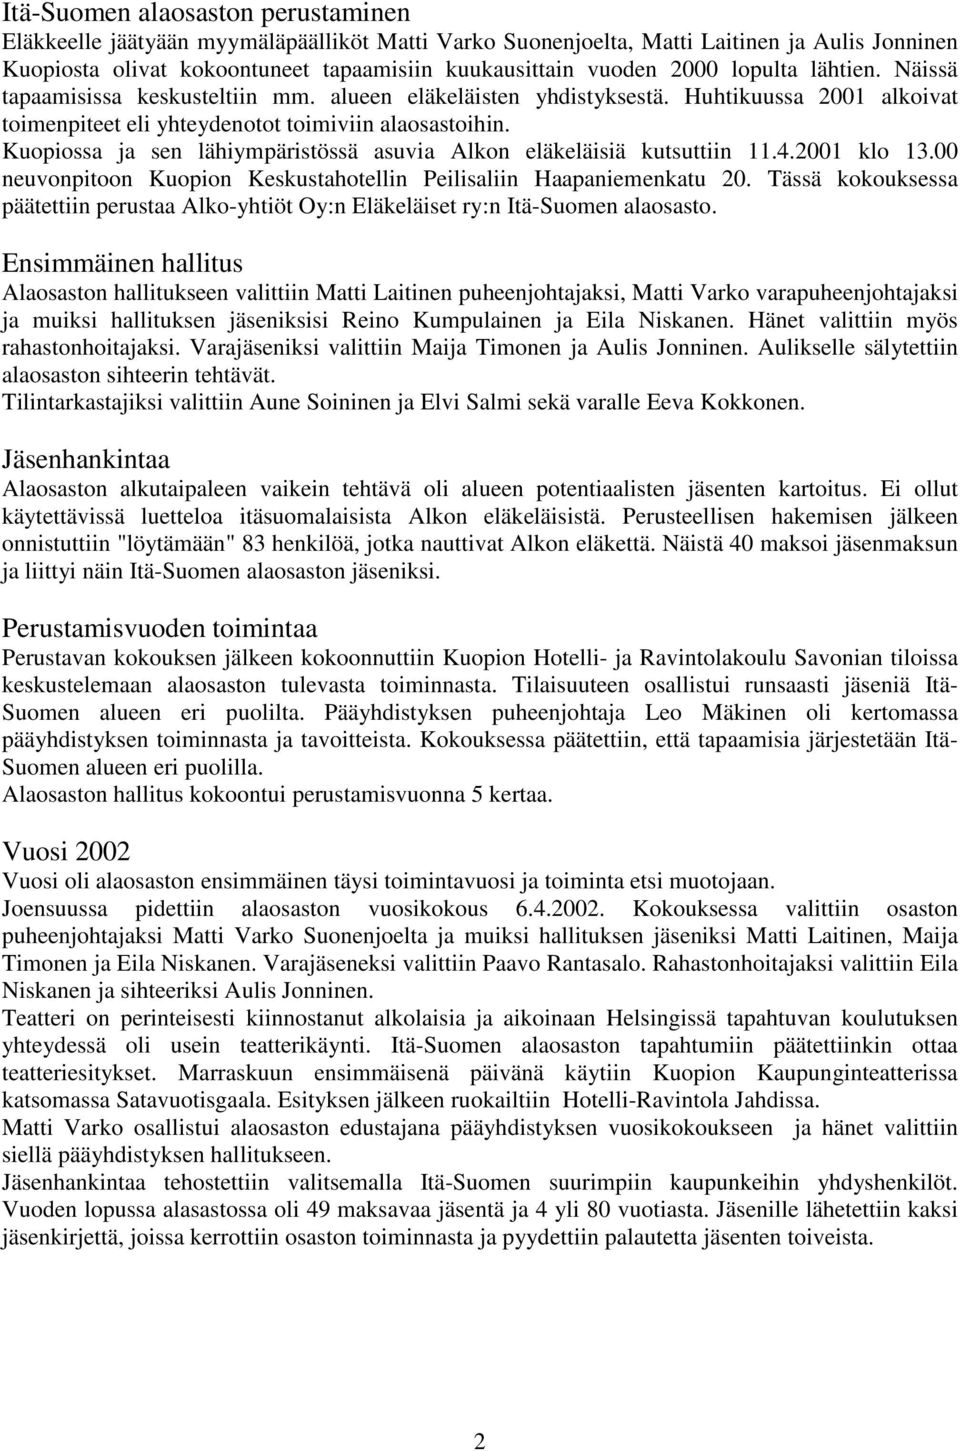 Kuopiossa ja sen lähiympäristössä asuvia Alkon eläkeläisiä kutsuttiin 11.4.2001 klo 13.00 neuvonpitoon Kuopion Keskustahotellin Peilisaliin Haapaniemenkatu 20.